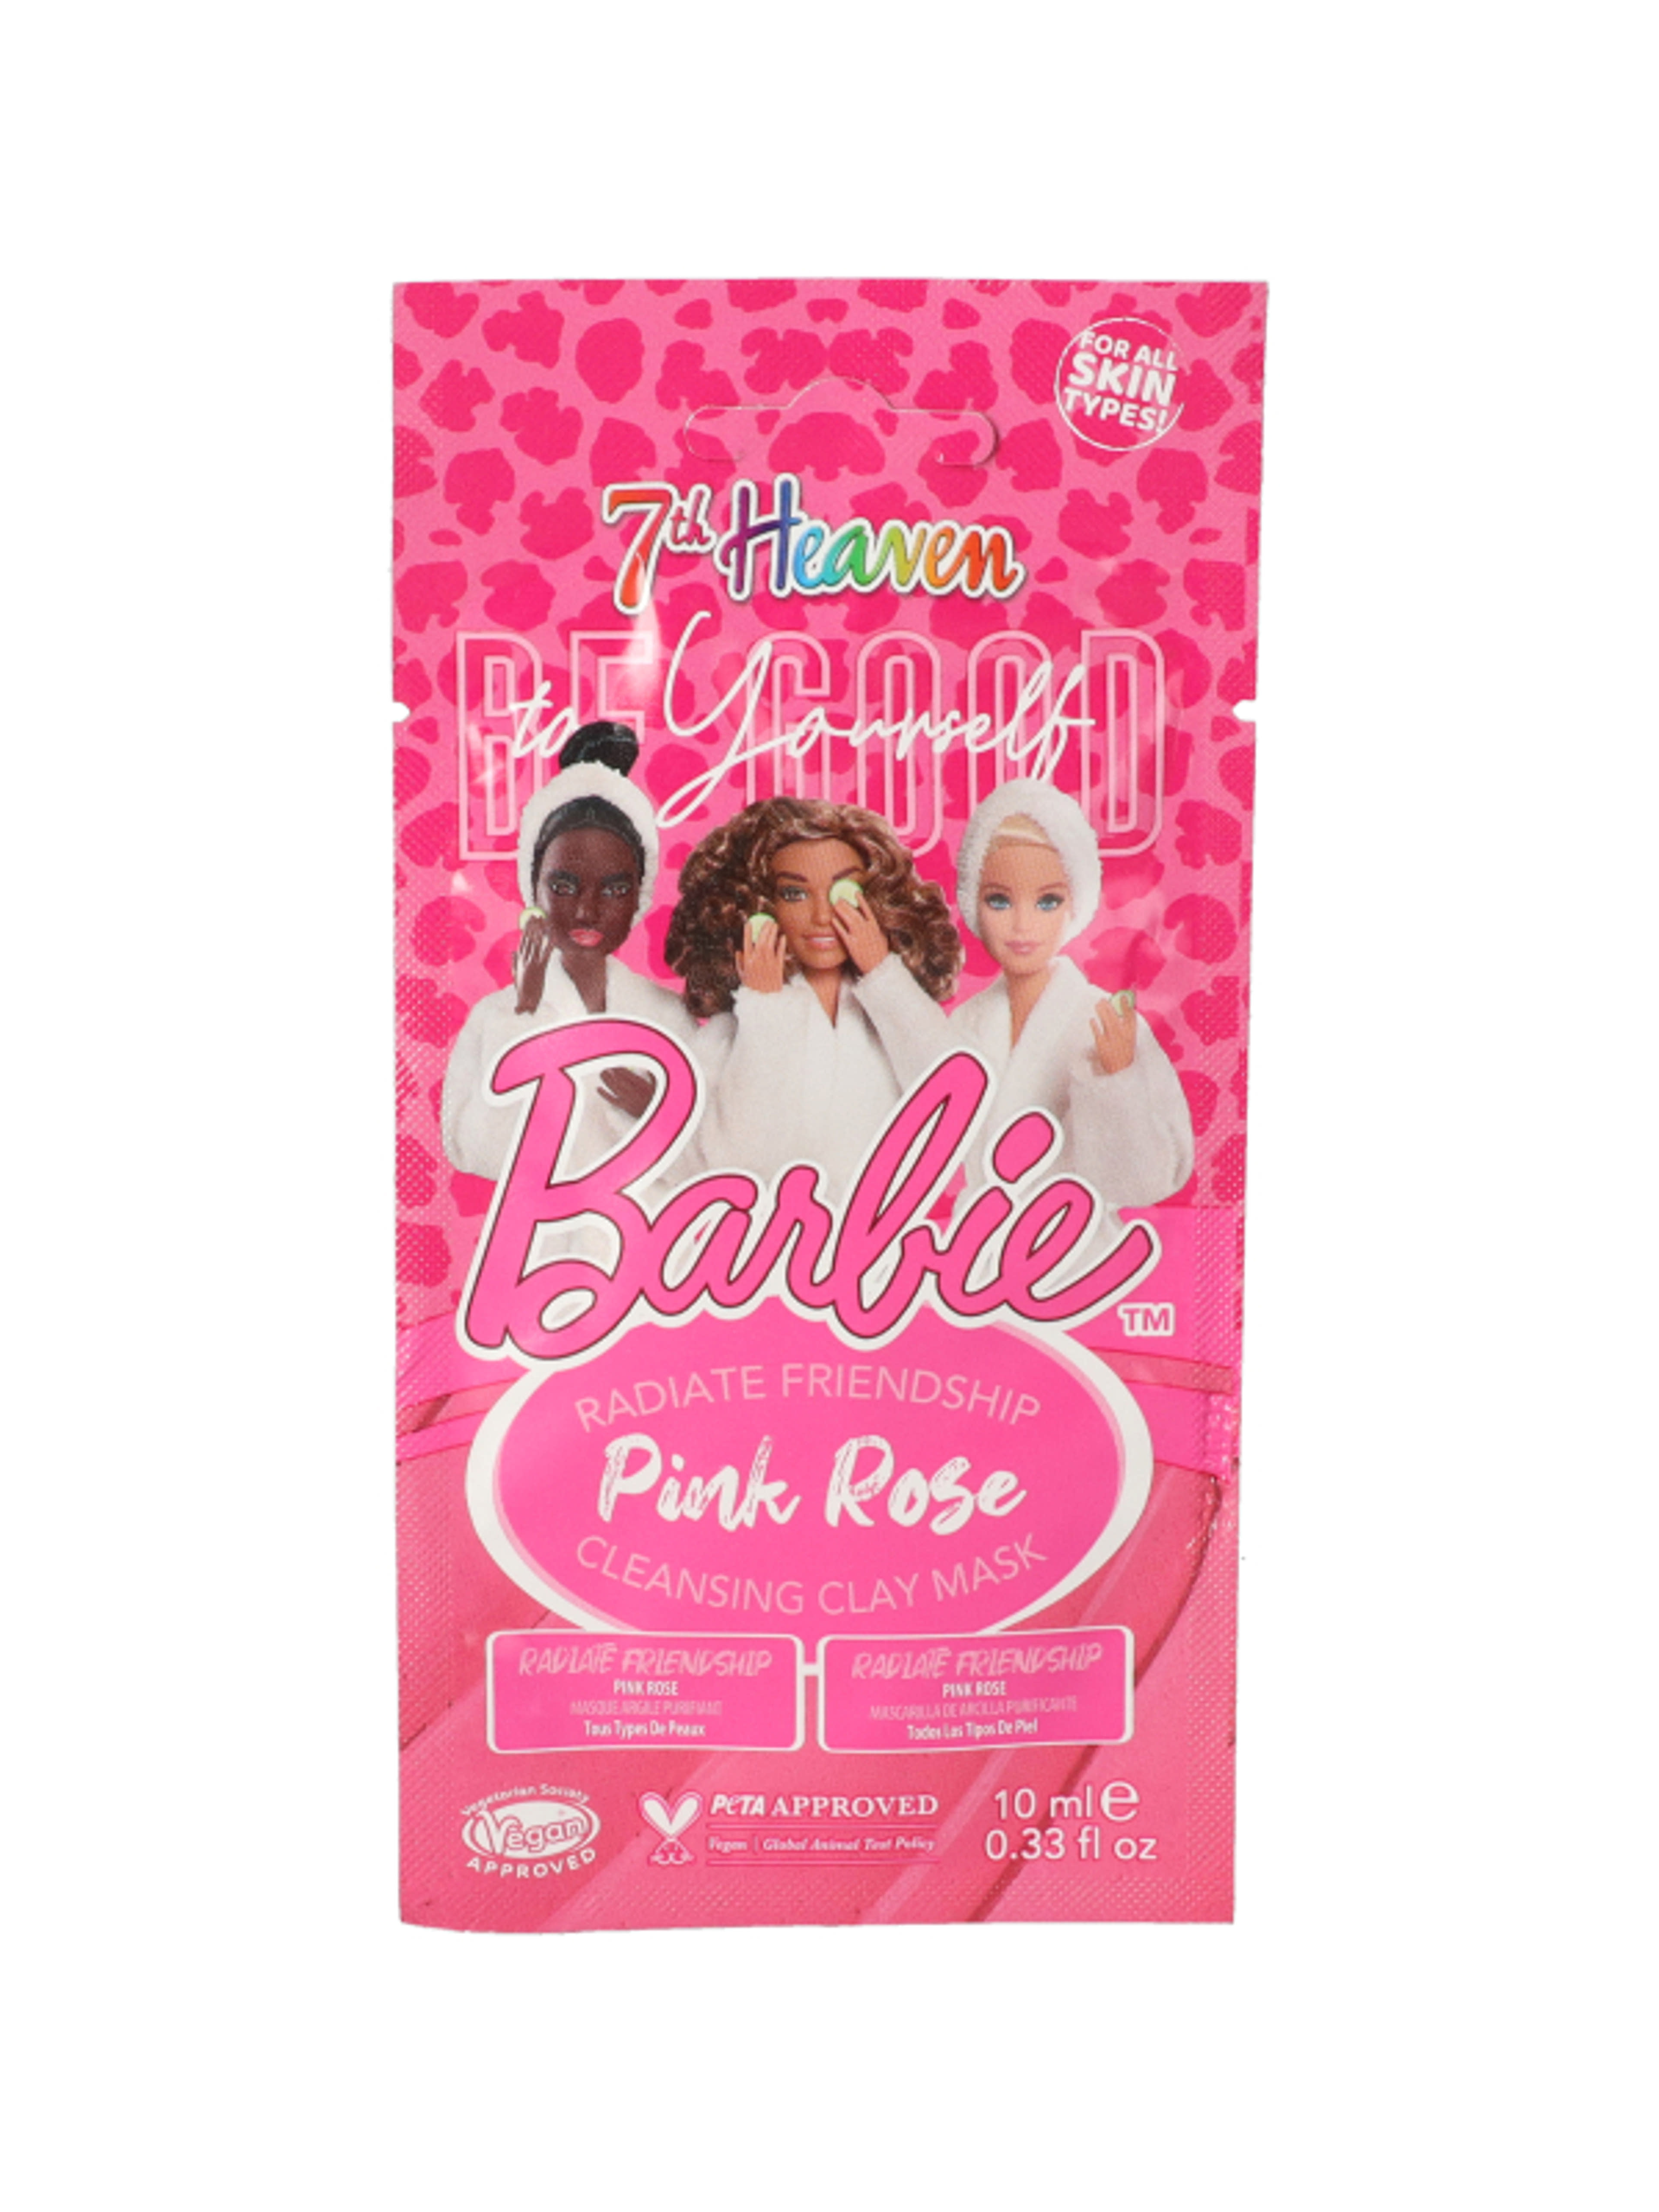 7th Heaven Barbie Pink Rose tisztító agyagmaszk - 10 ml-1